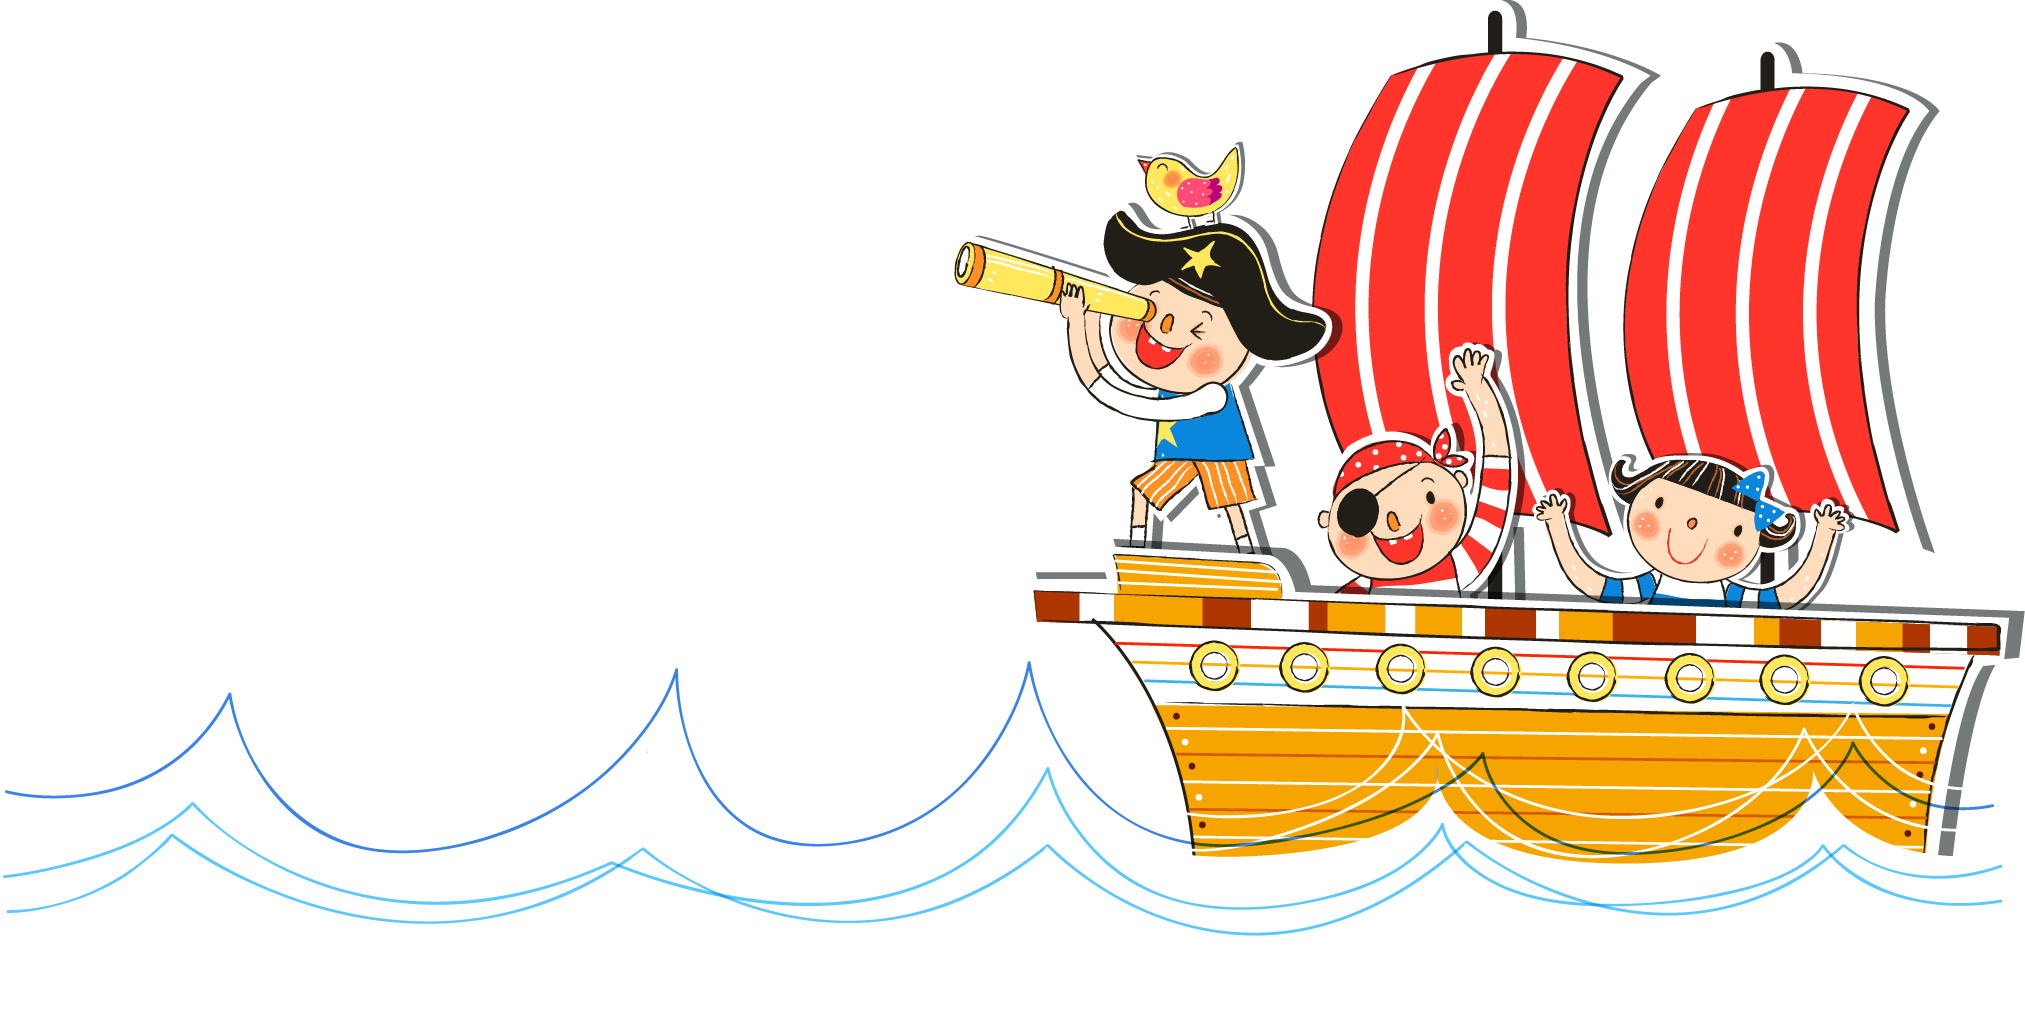 Watercraft cartoon cute little. Sailor clipart sailor ship